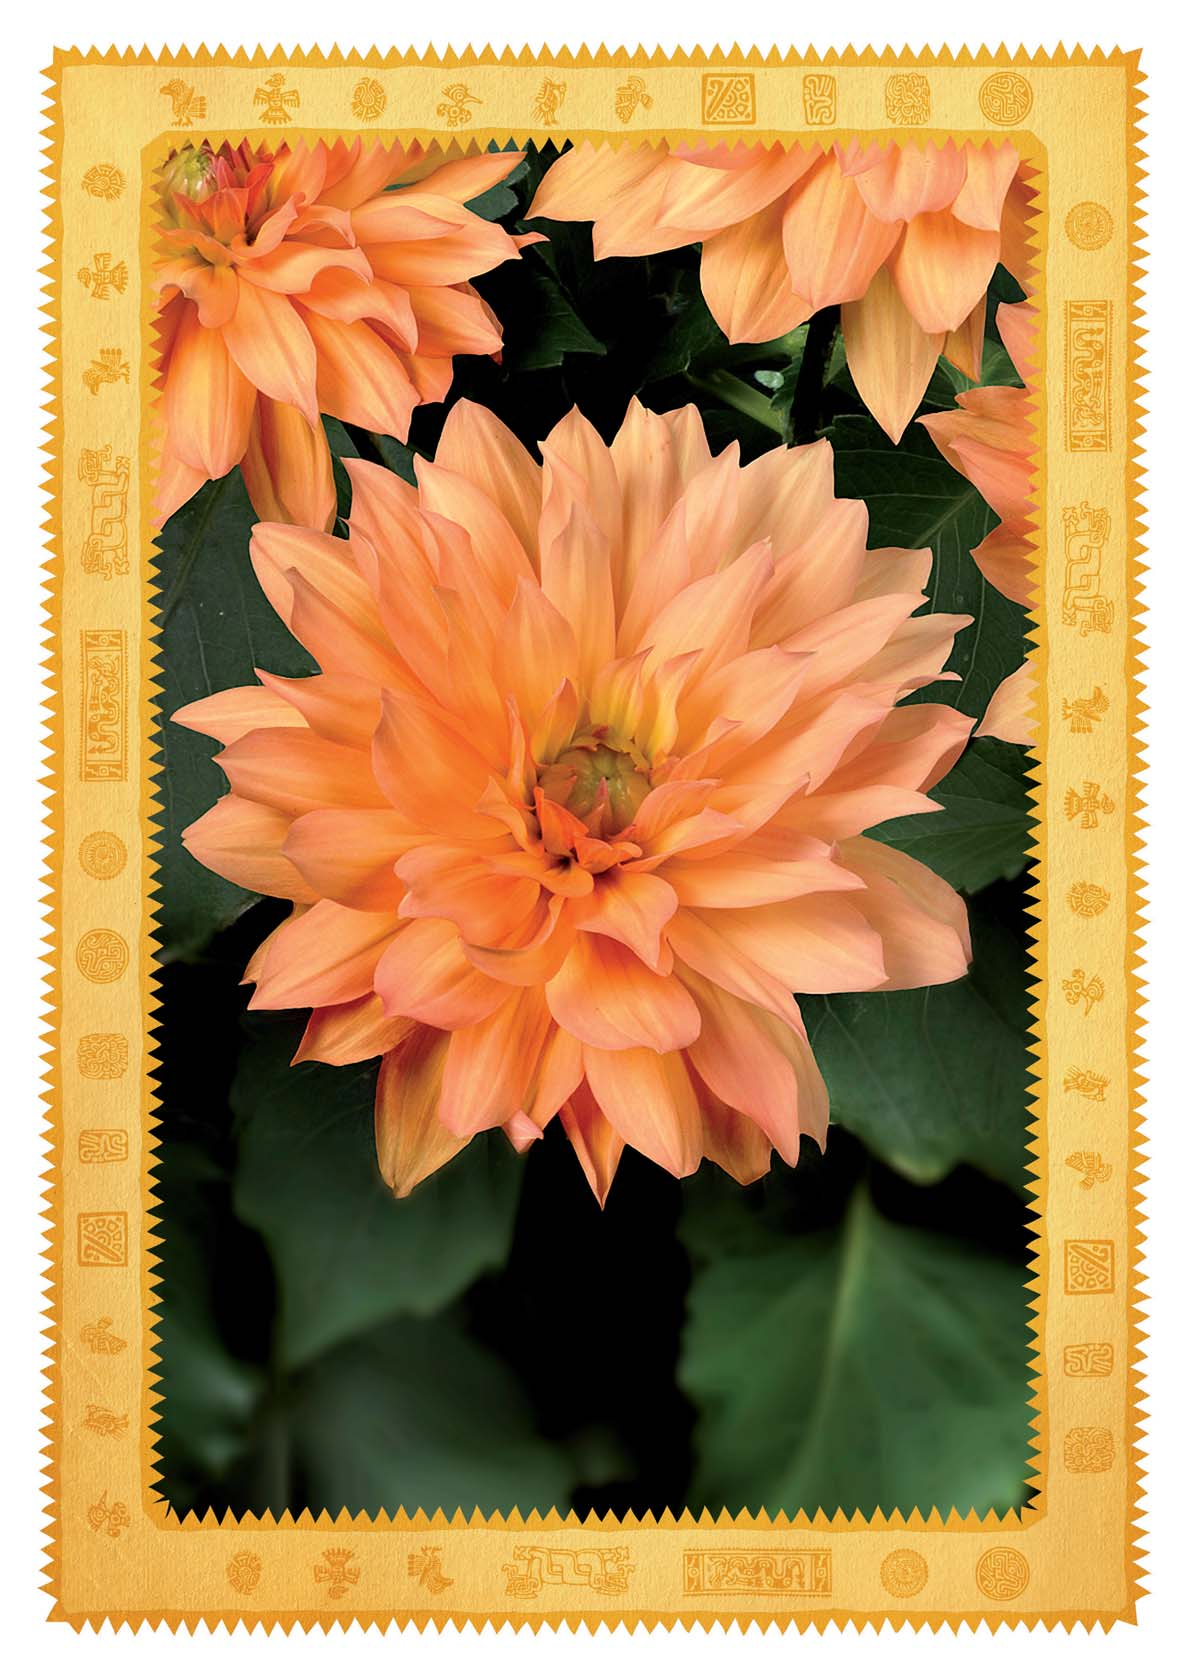 Dahlia XXL Kollektion Tatsächliche- Größe* Große Blüte Durchblühend Uniformer Blütentyp